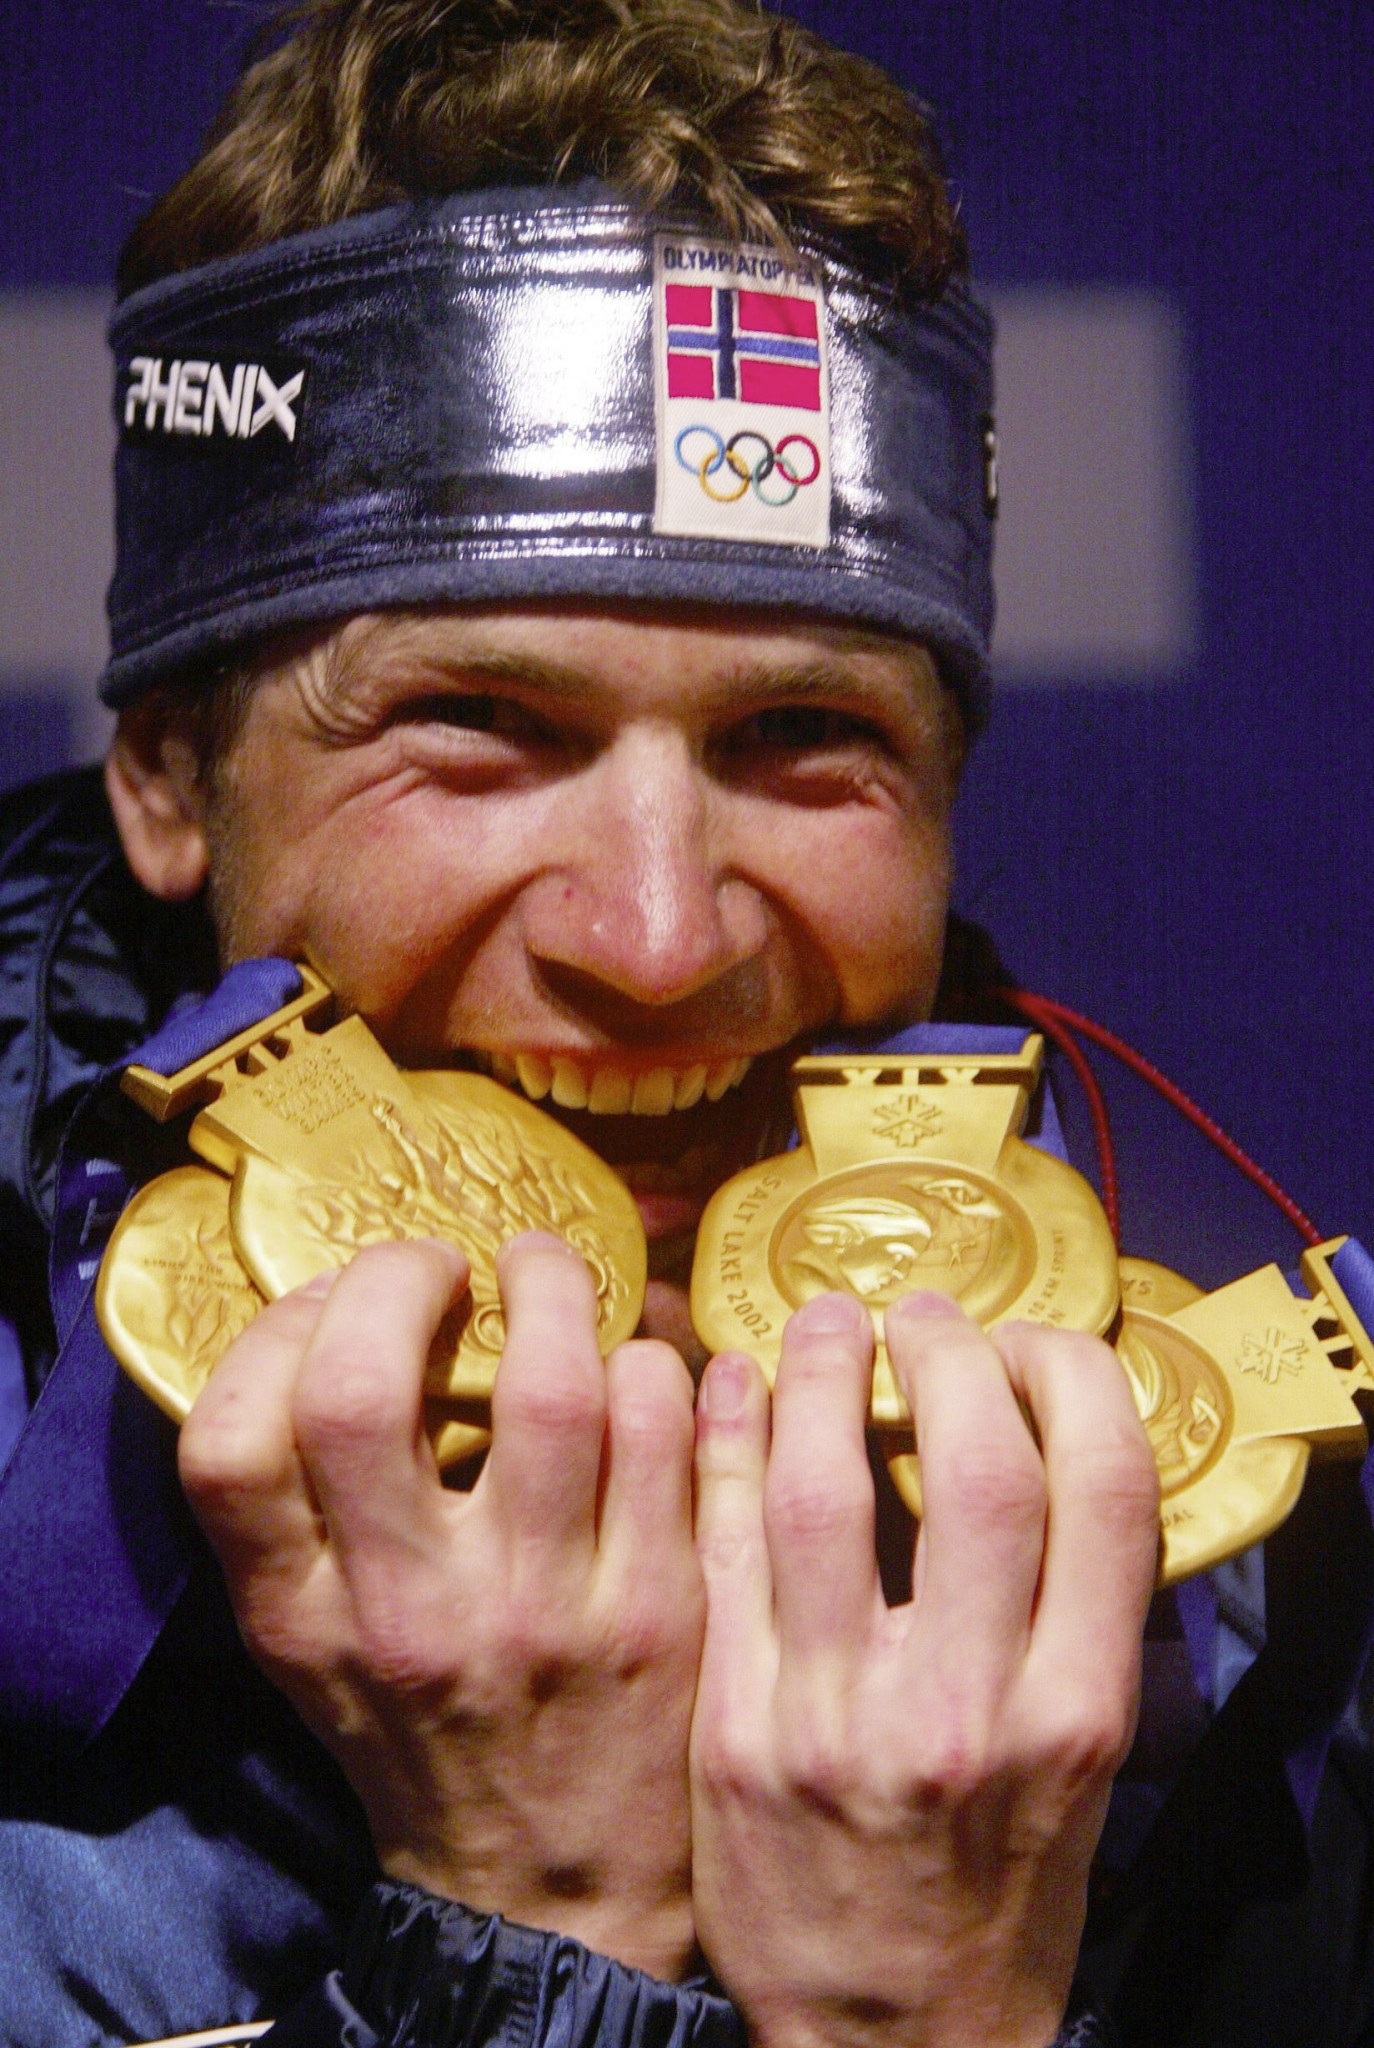 Ole Einar Bjørndalen won four gold medals at Salt Lake City 2002 ©Getty Images